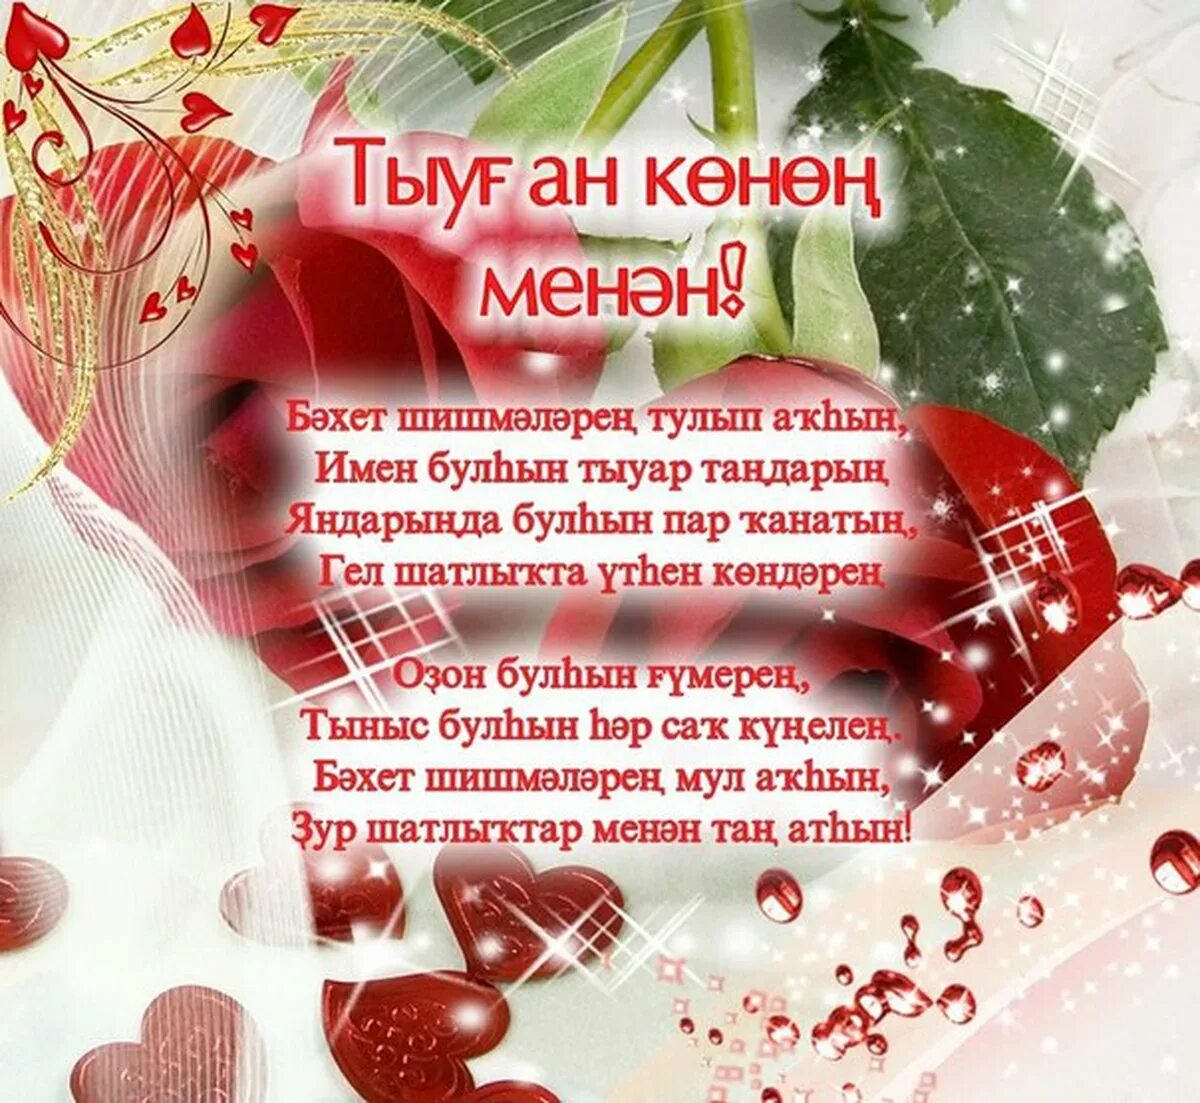 Открытка с юбилеем на башкирском языке. Поздравления с днём рождения на башкирском языке. Поздравление с юбилеем на башкирском языке. Поздравления с днём на башкирском языке.